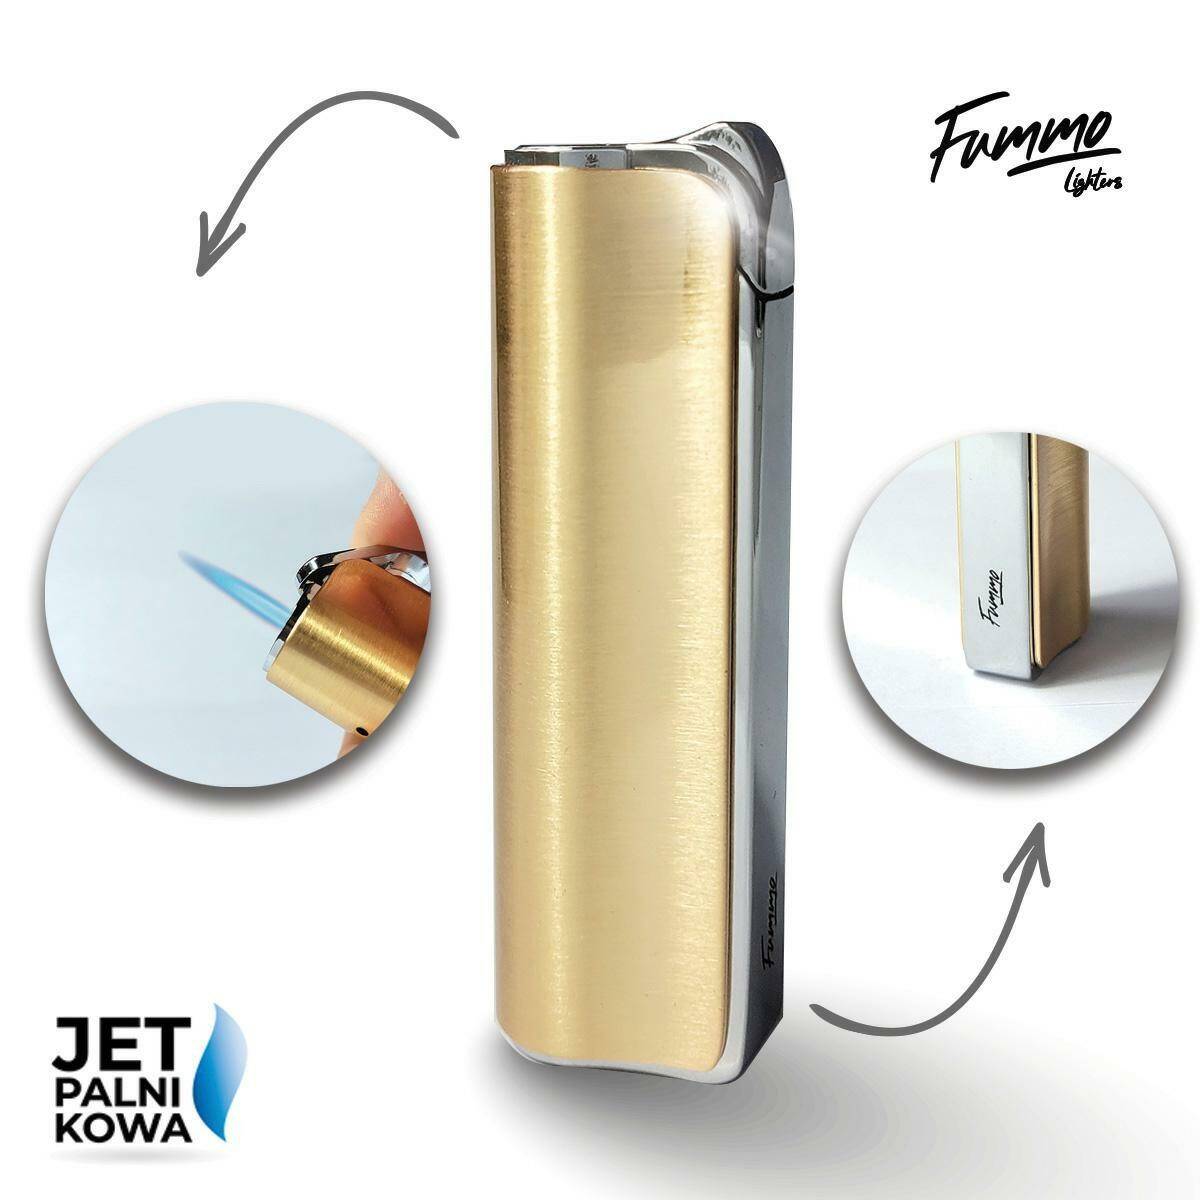 Lighter - Fummo Avoca (Jet/Gold)